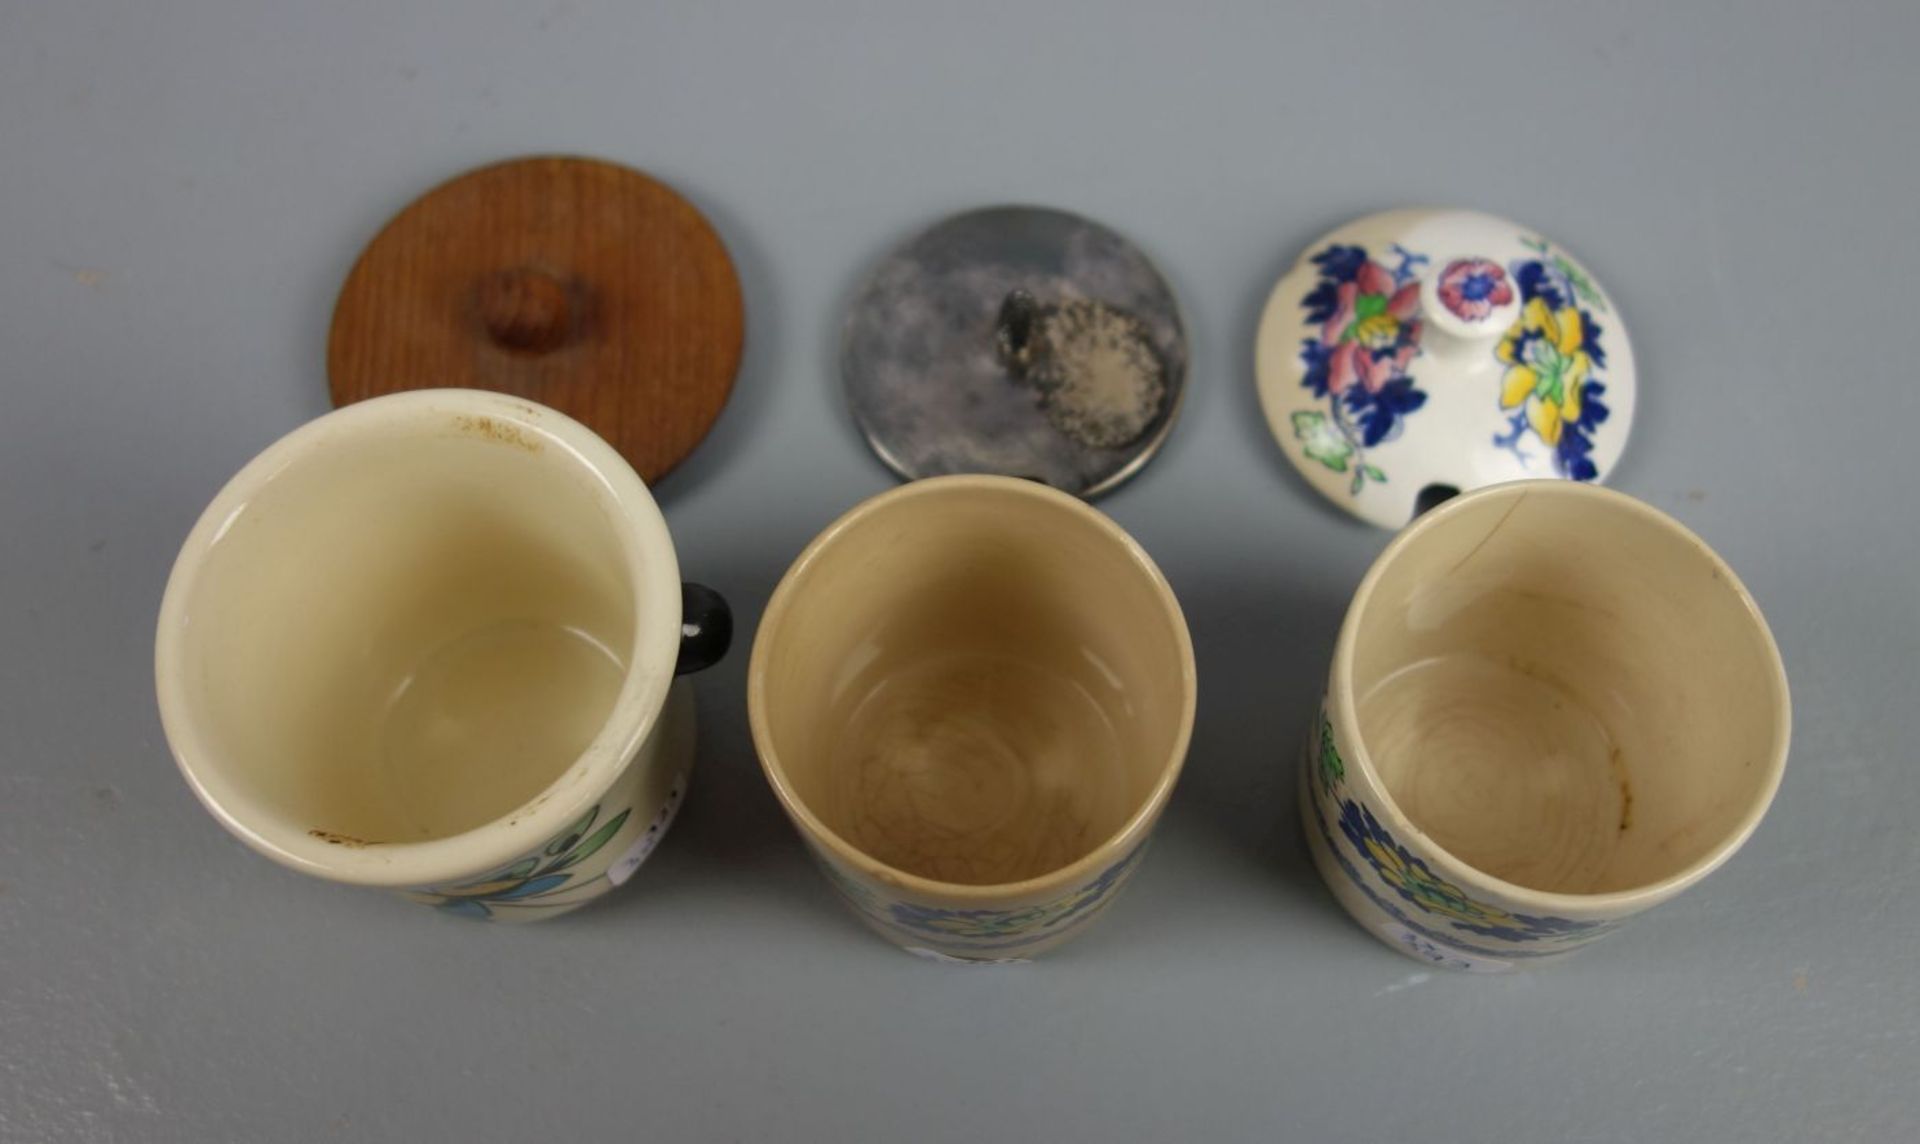 3 DECKELDOSEN / KOMPOTTIEREN, Keramik, 20. Jh. Drei konische Keramikbecher mit polychromem - Bild 3 aus 4